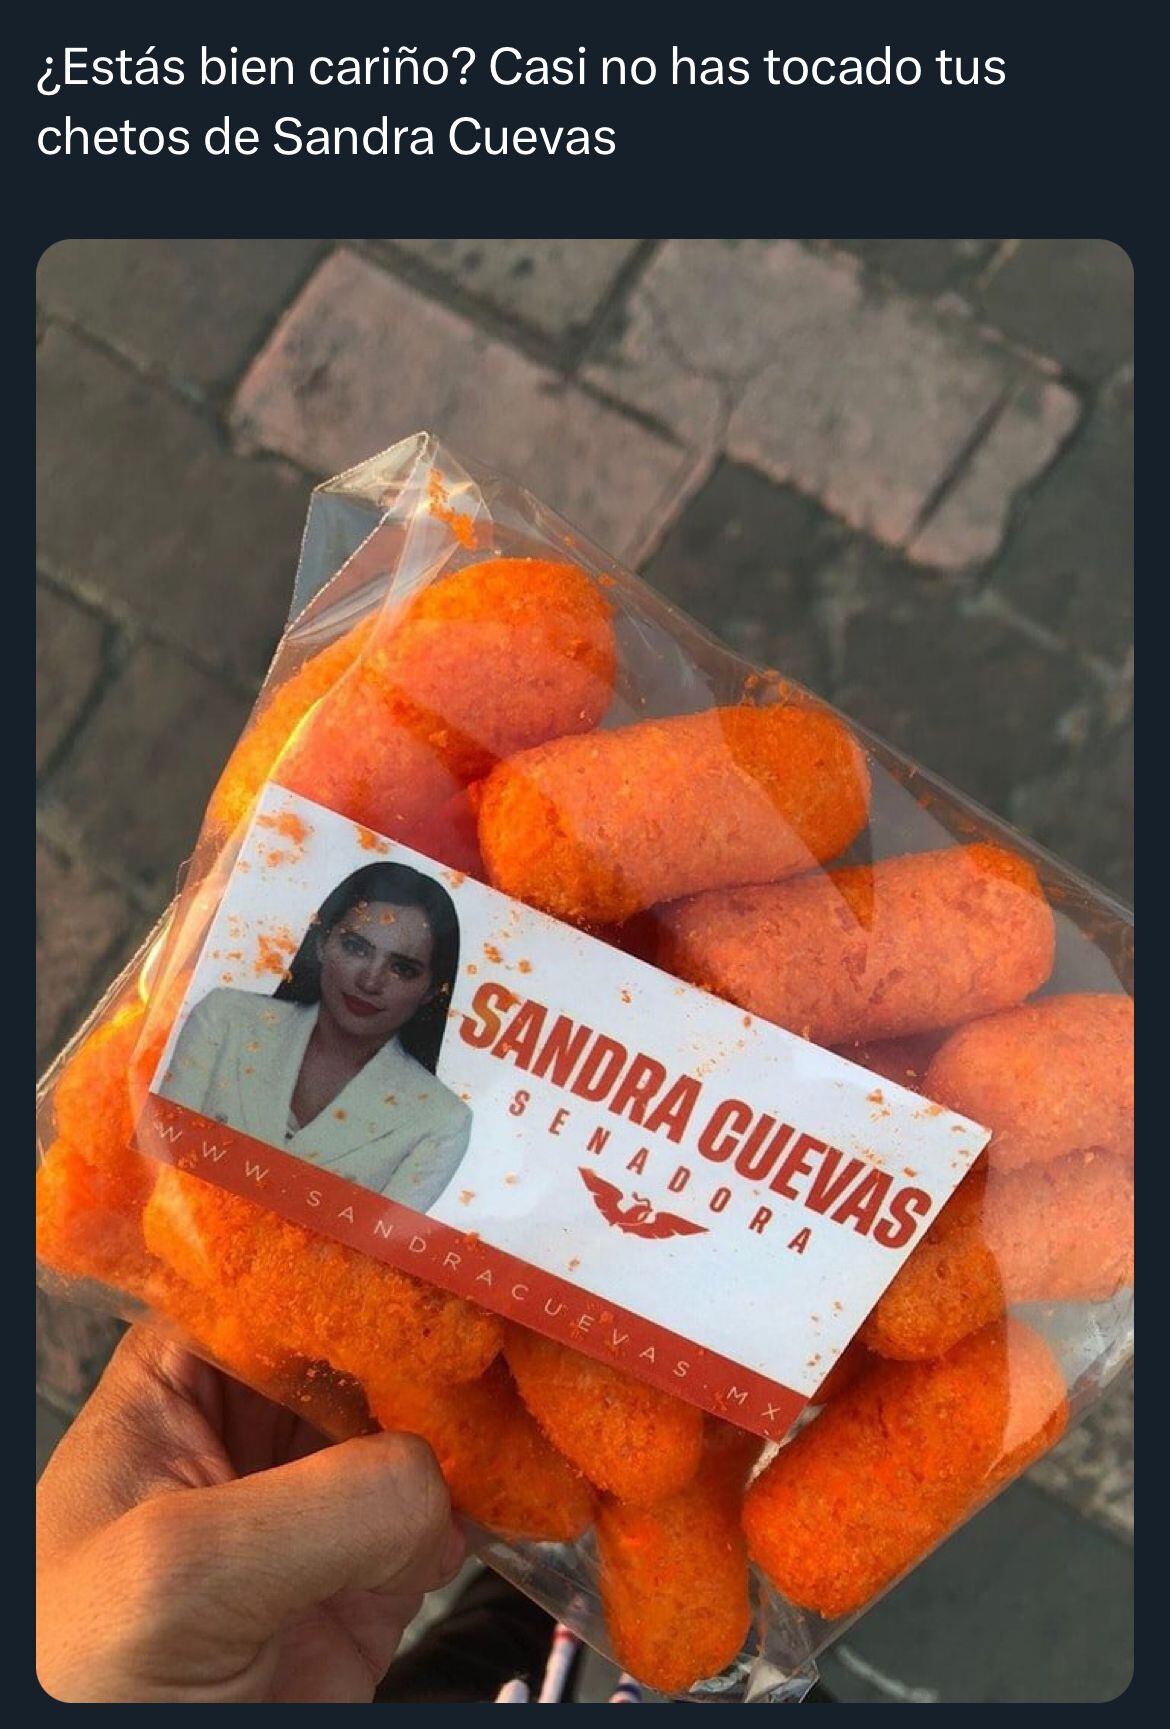 Los memes de los 'chetos' de Sandra Cuevas hacen referencia a películas y series. (Foto: X / @rickydelhoyo)